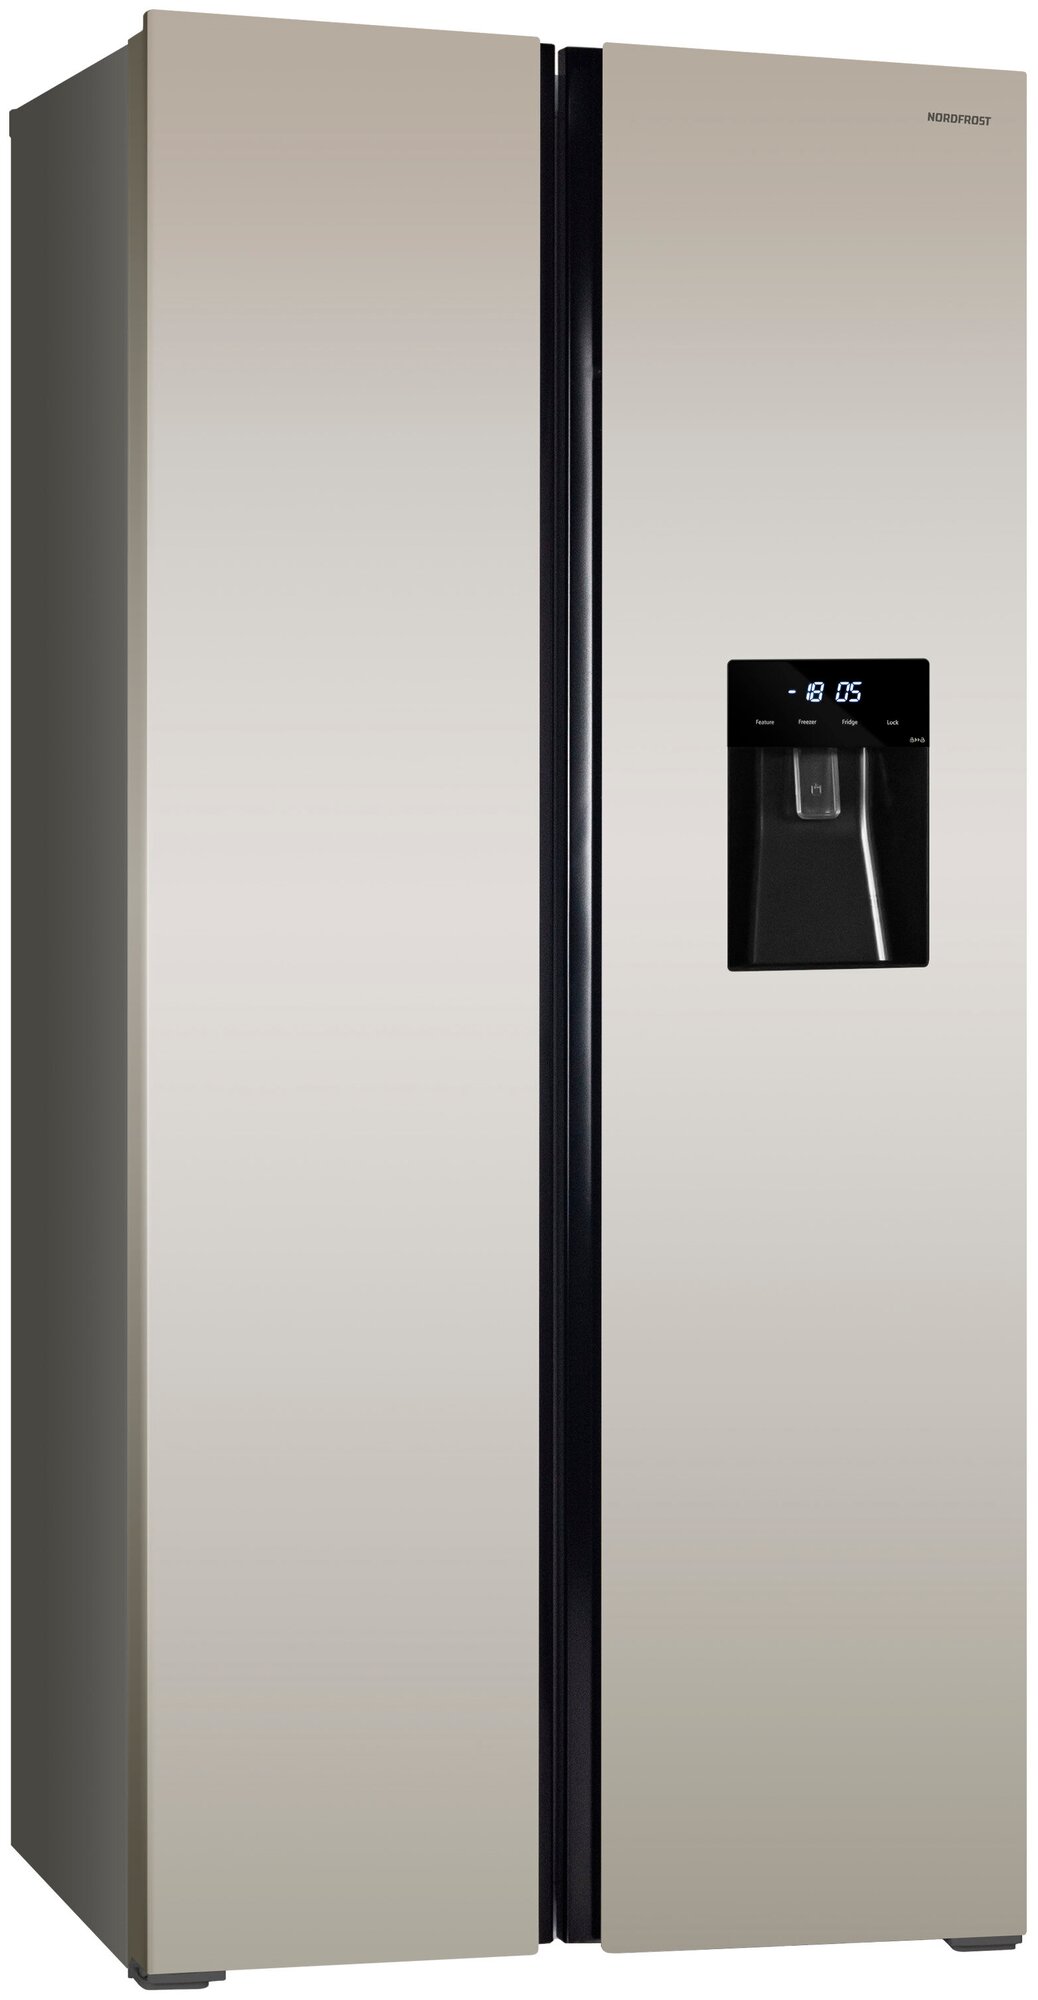 Холодильник NORDFROST RFS 484D NF Side-by-Side отдельностоящий Total No Frost инвертор 472 л объем